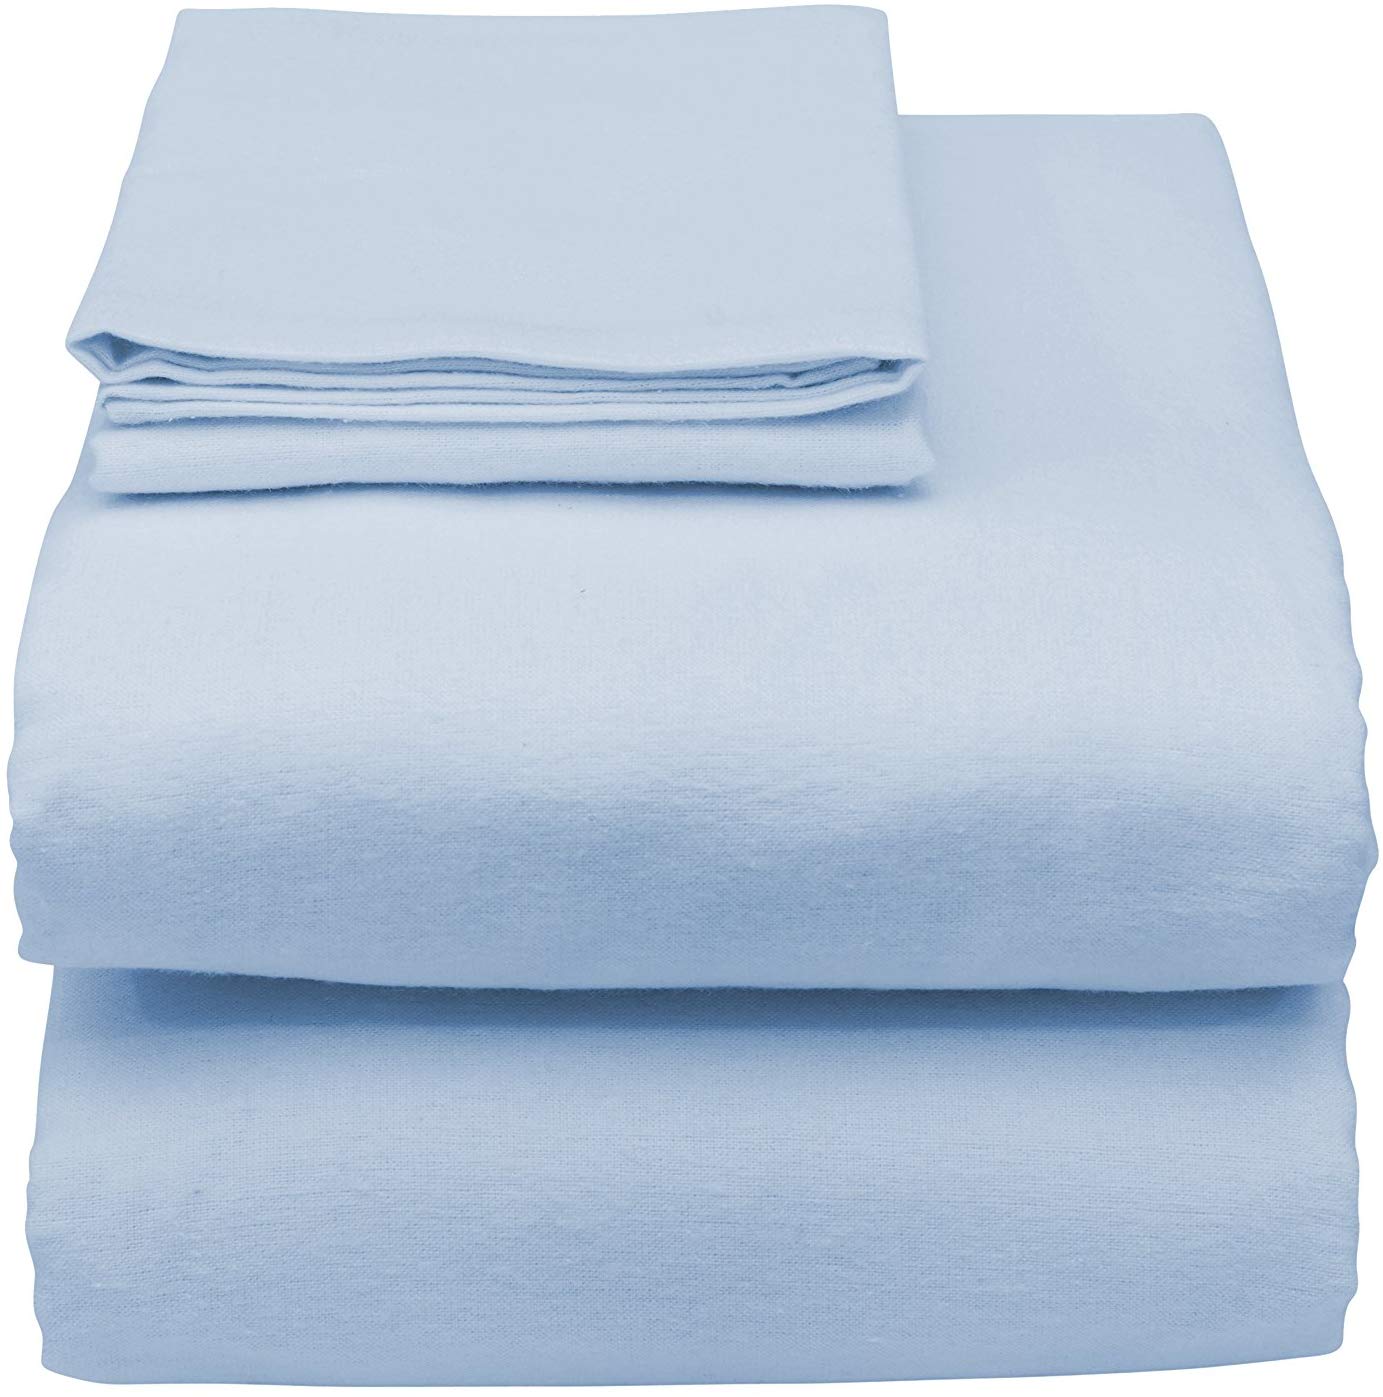 Medical Bed sheet